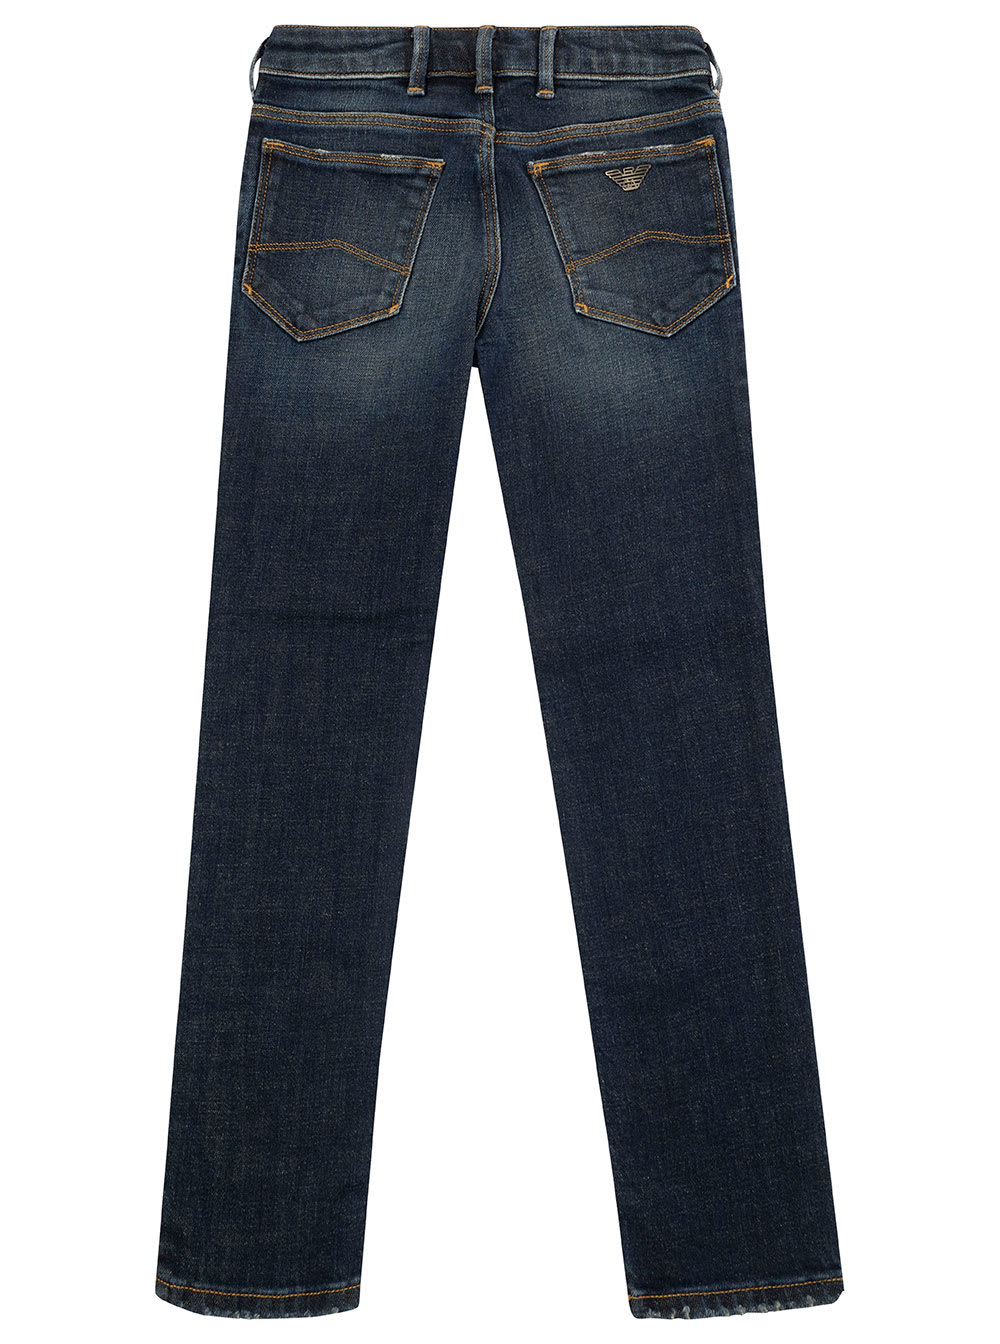 Shop Emporio Armani Pantalone 5 Tasche In Denim Blu+ù